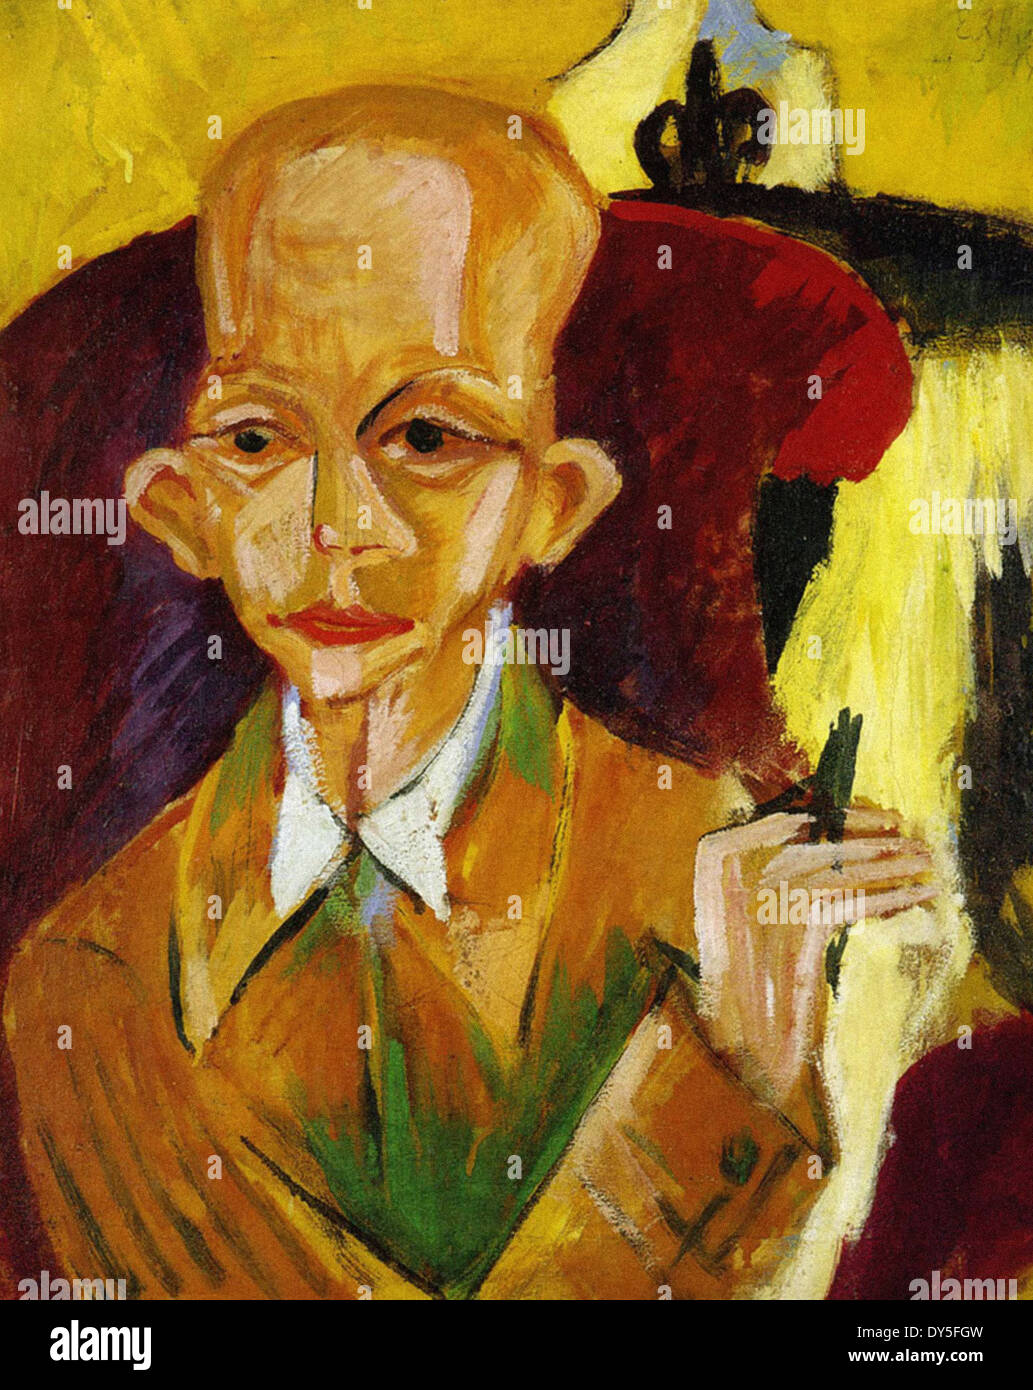 Ernst Ludwig Kirchner Portrait of the Artist Oskar Schlemmer Stock Photo